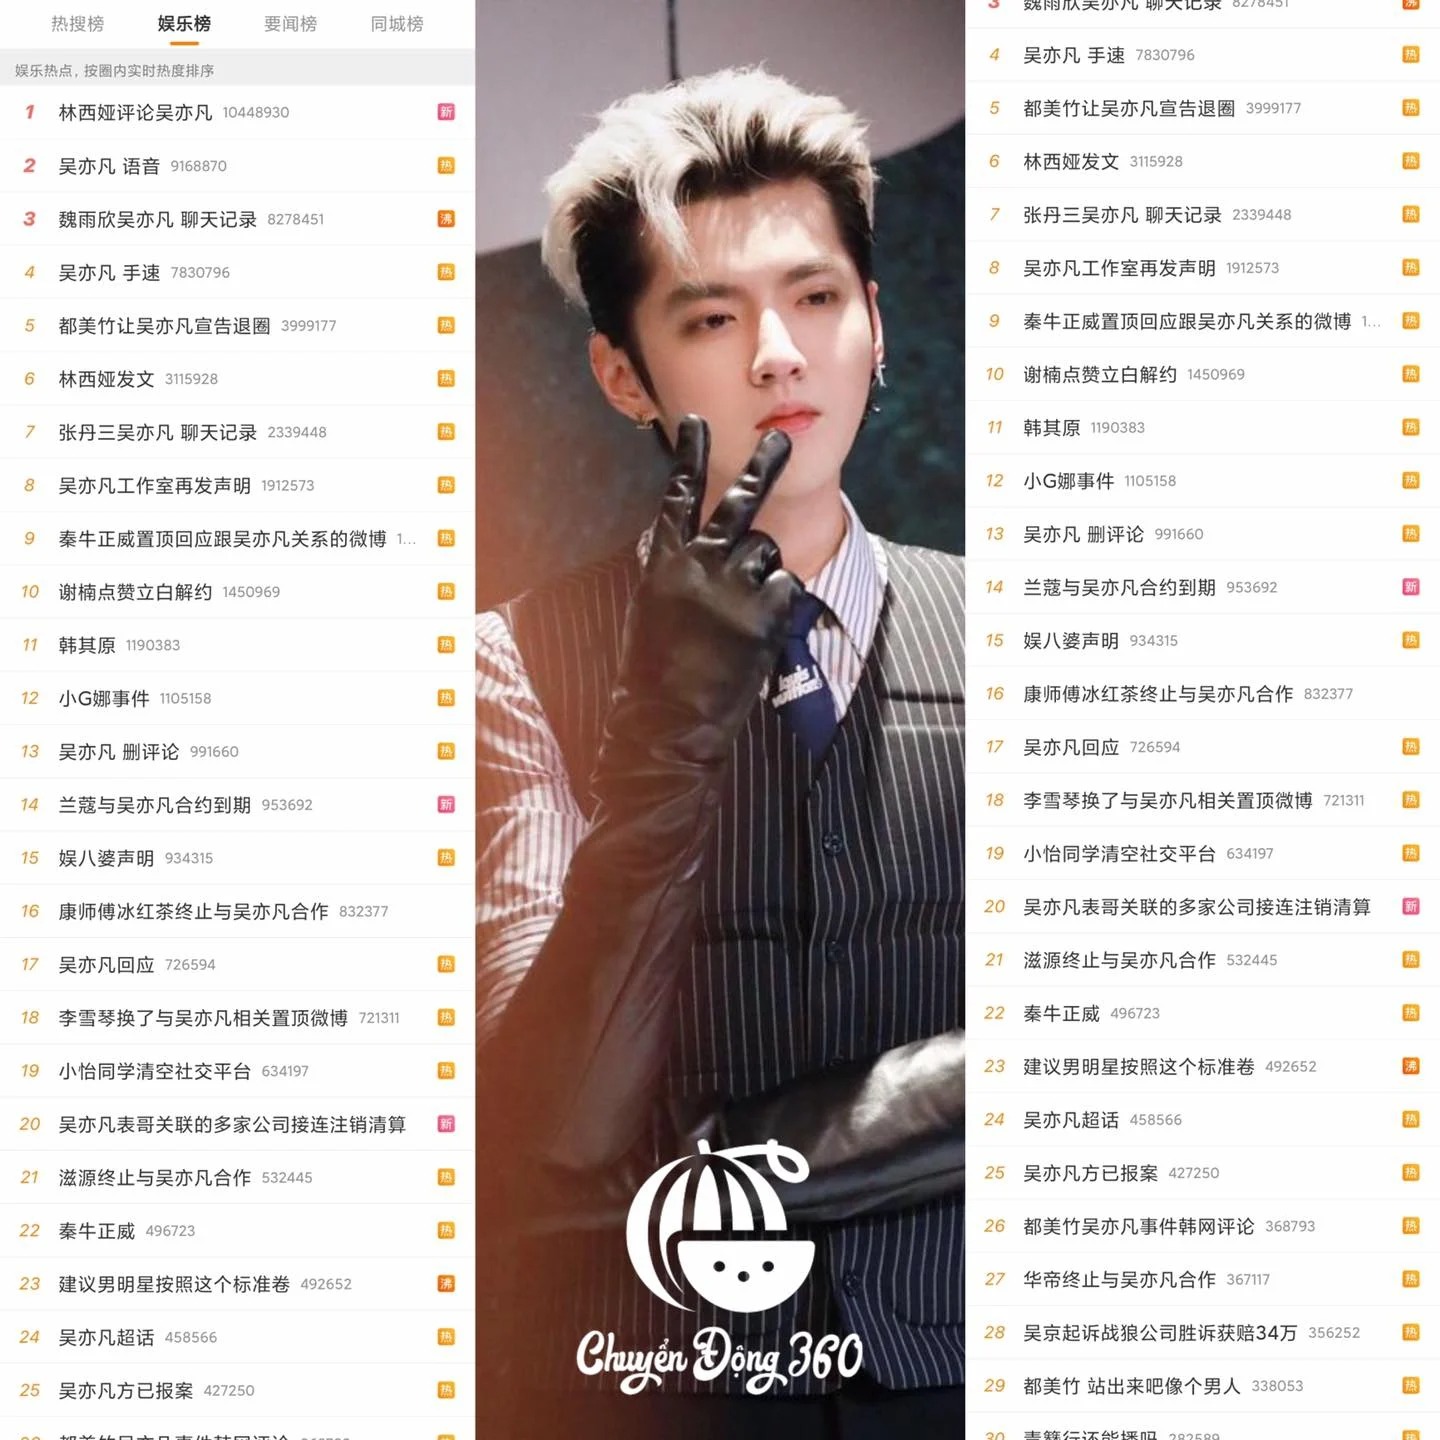 Ngô Diệc Phàm lập 3 kỷ lục mà nghệ sĩ Cbiz không ai dám theo: Bao thầu Weibo, Đỉnh lưu quốc tế, Phong sát toàn diện 1